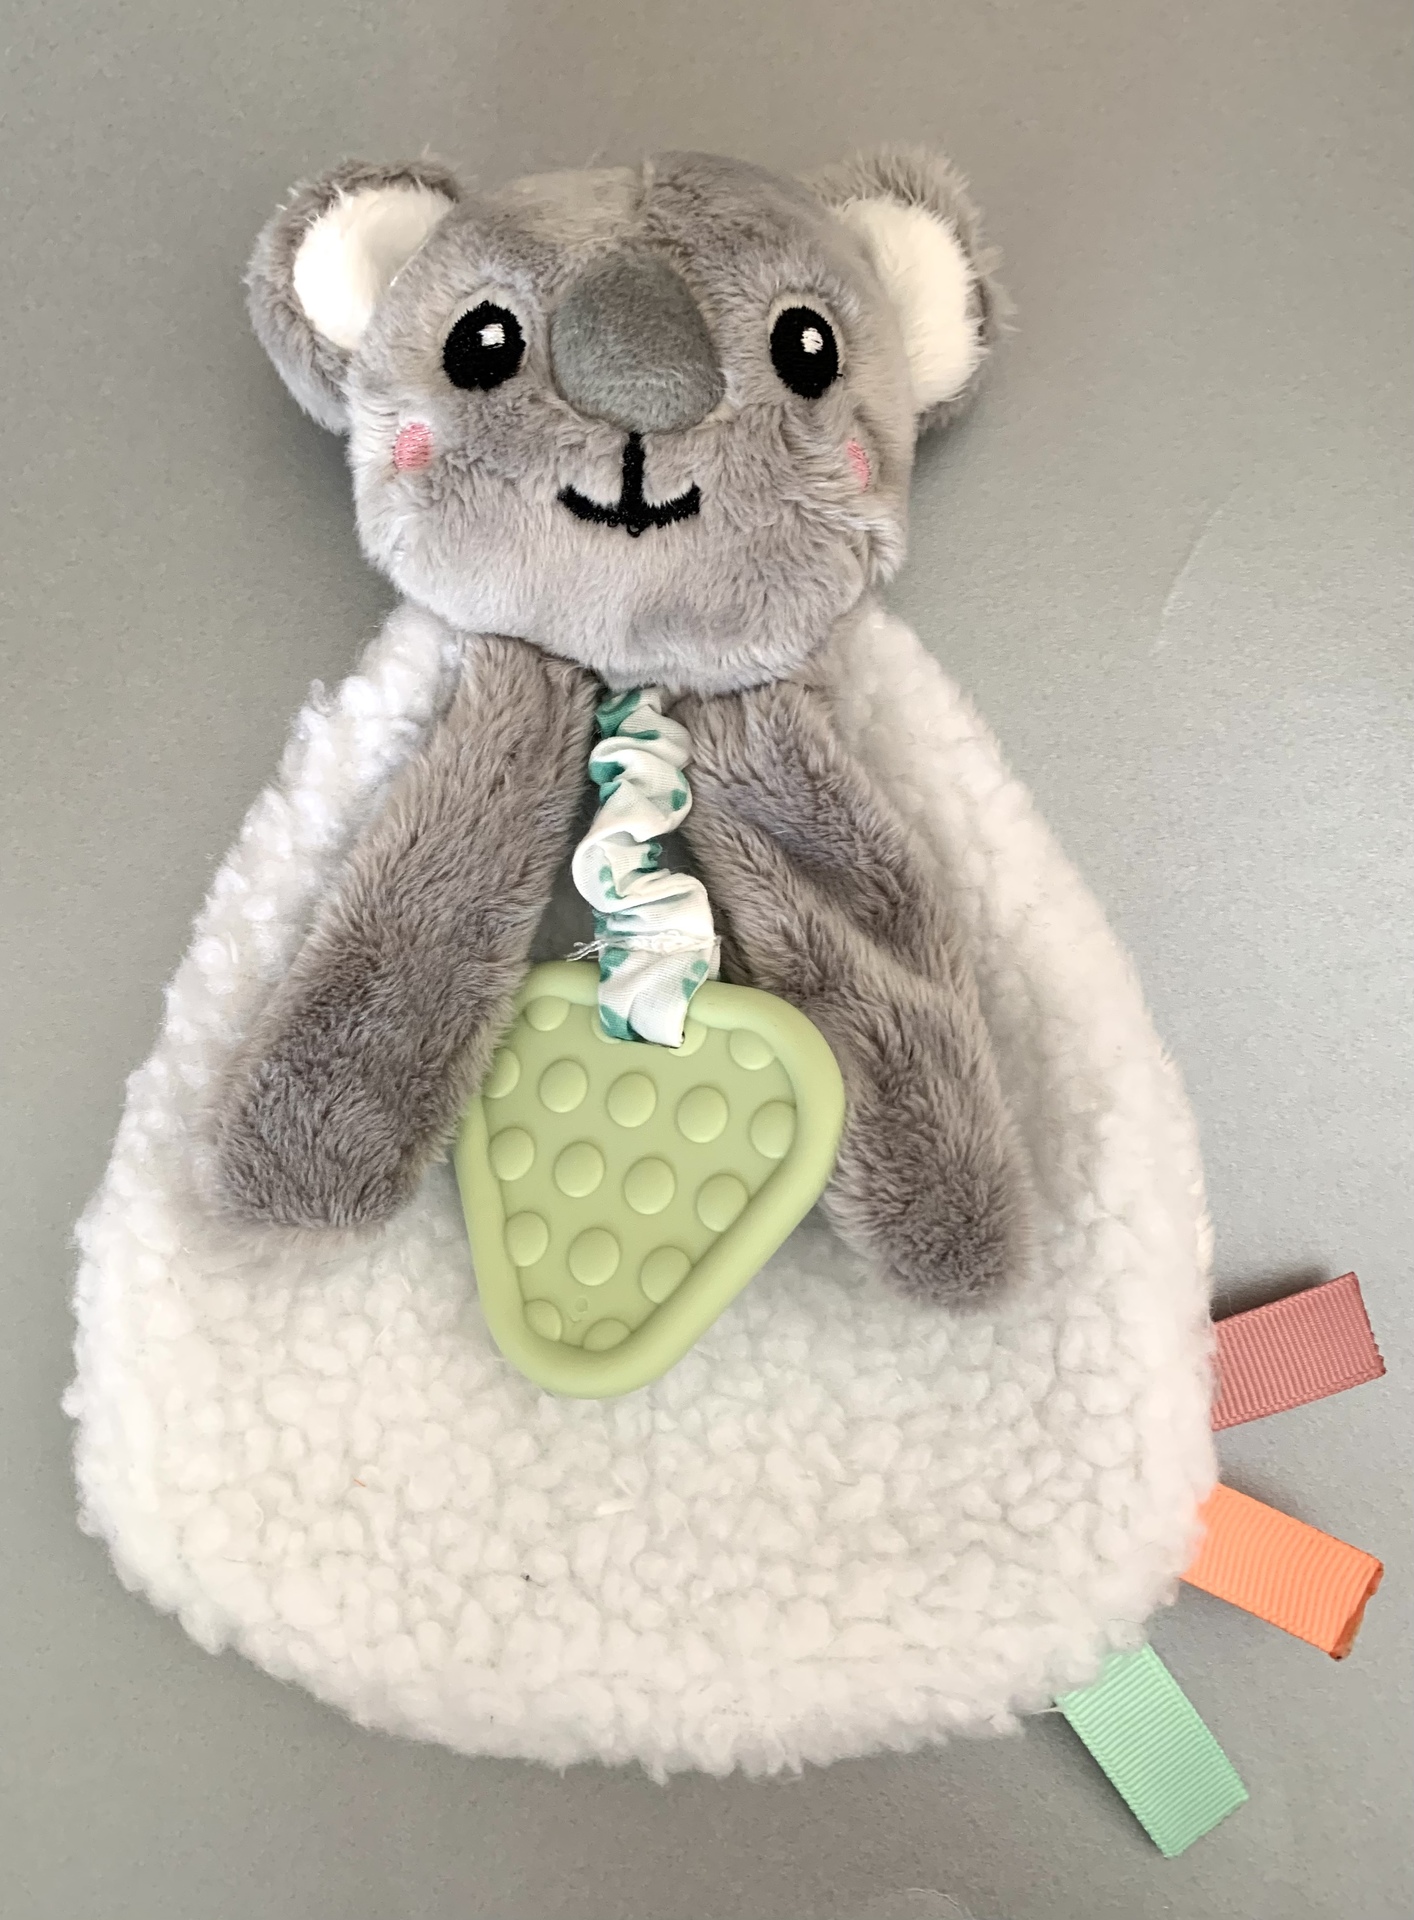 Koala Baby Comforter